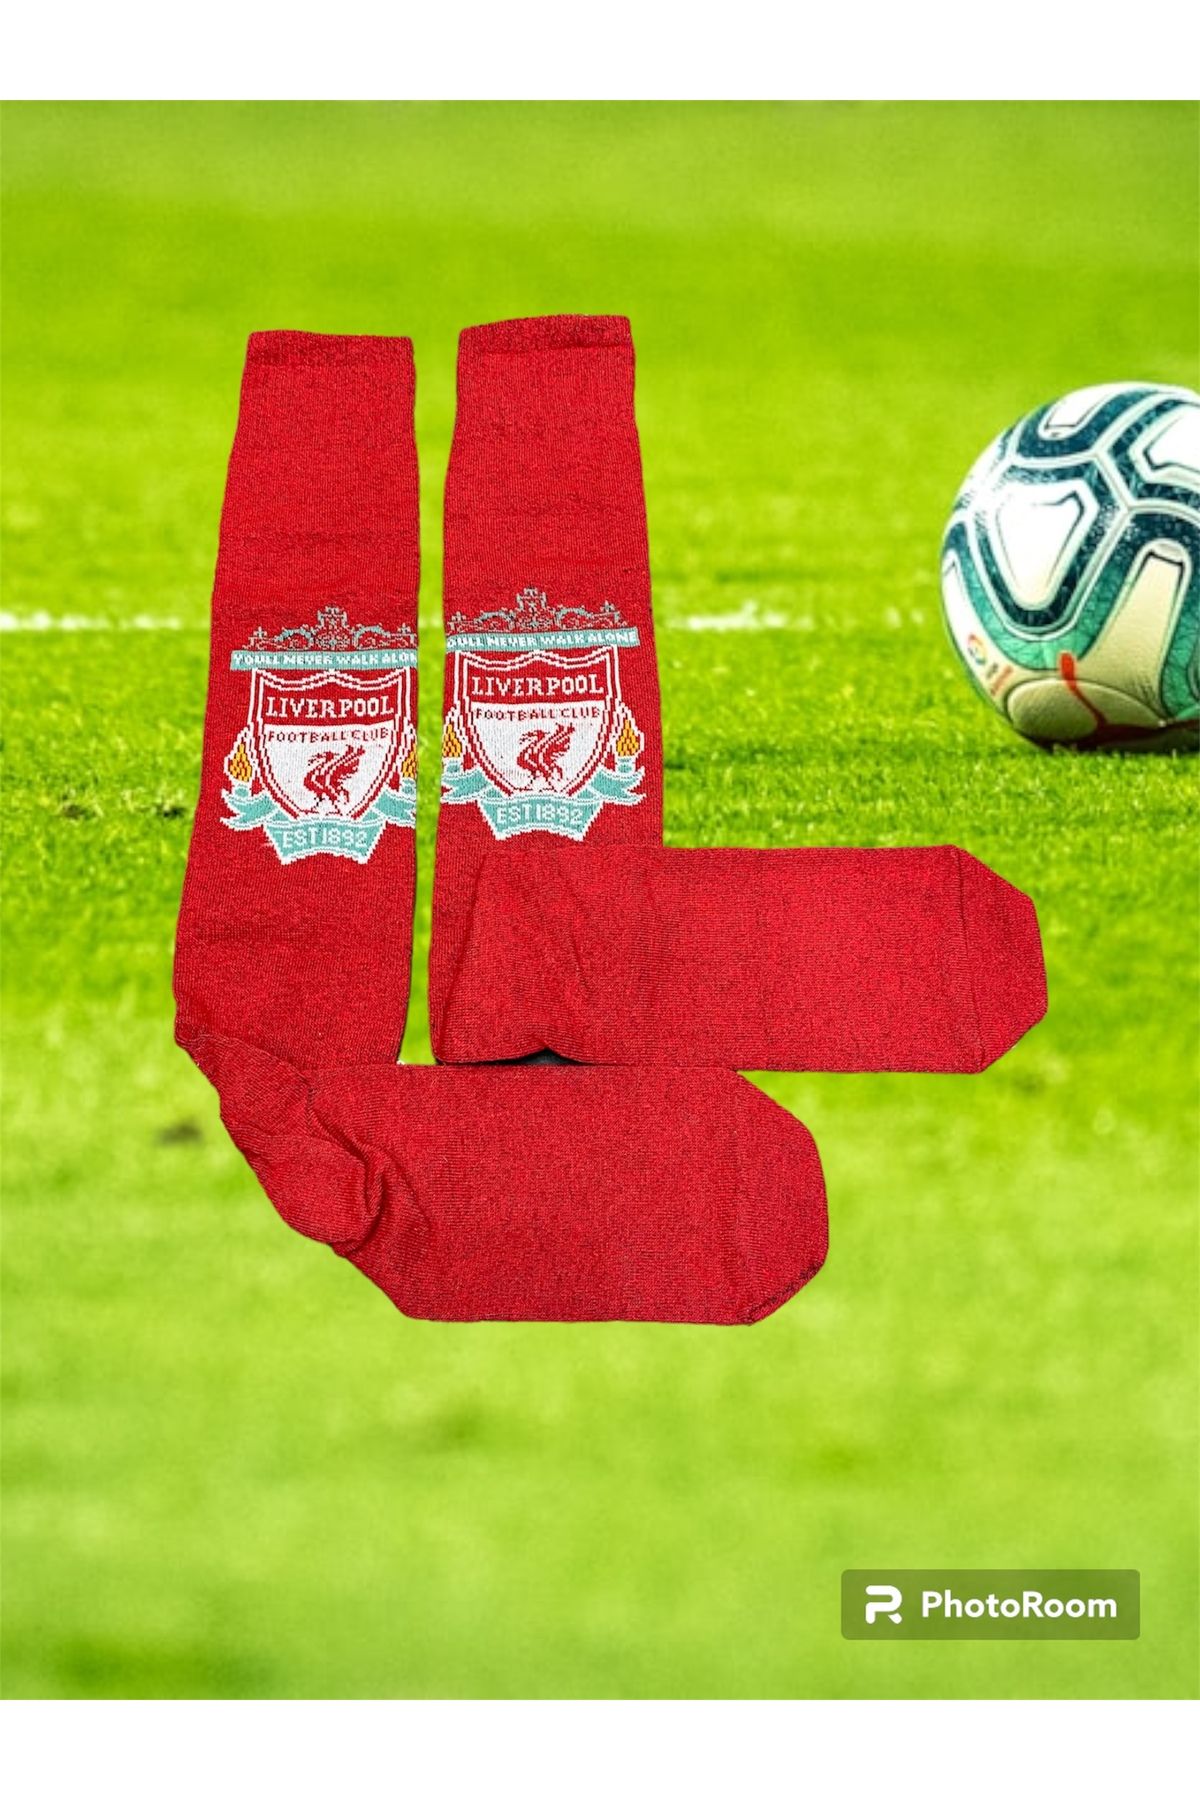 Suq giyim Liverpool futbol çorabı